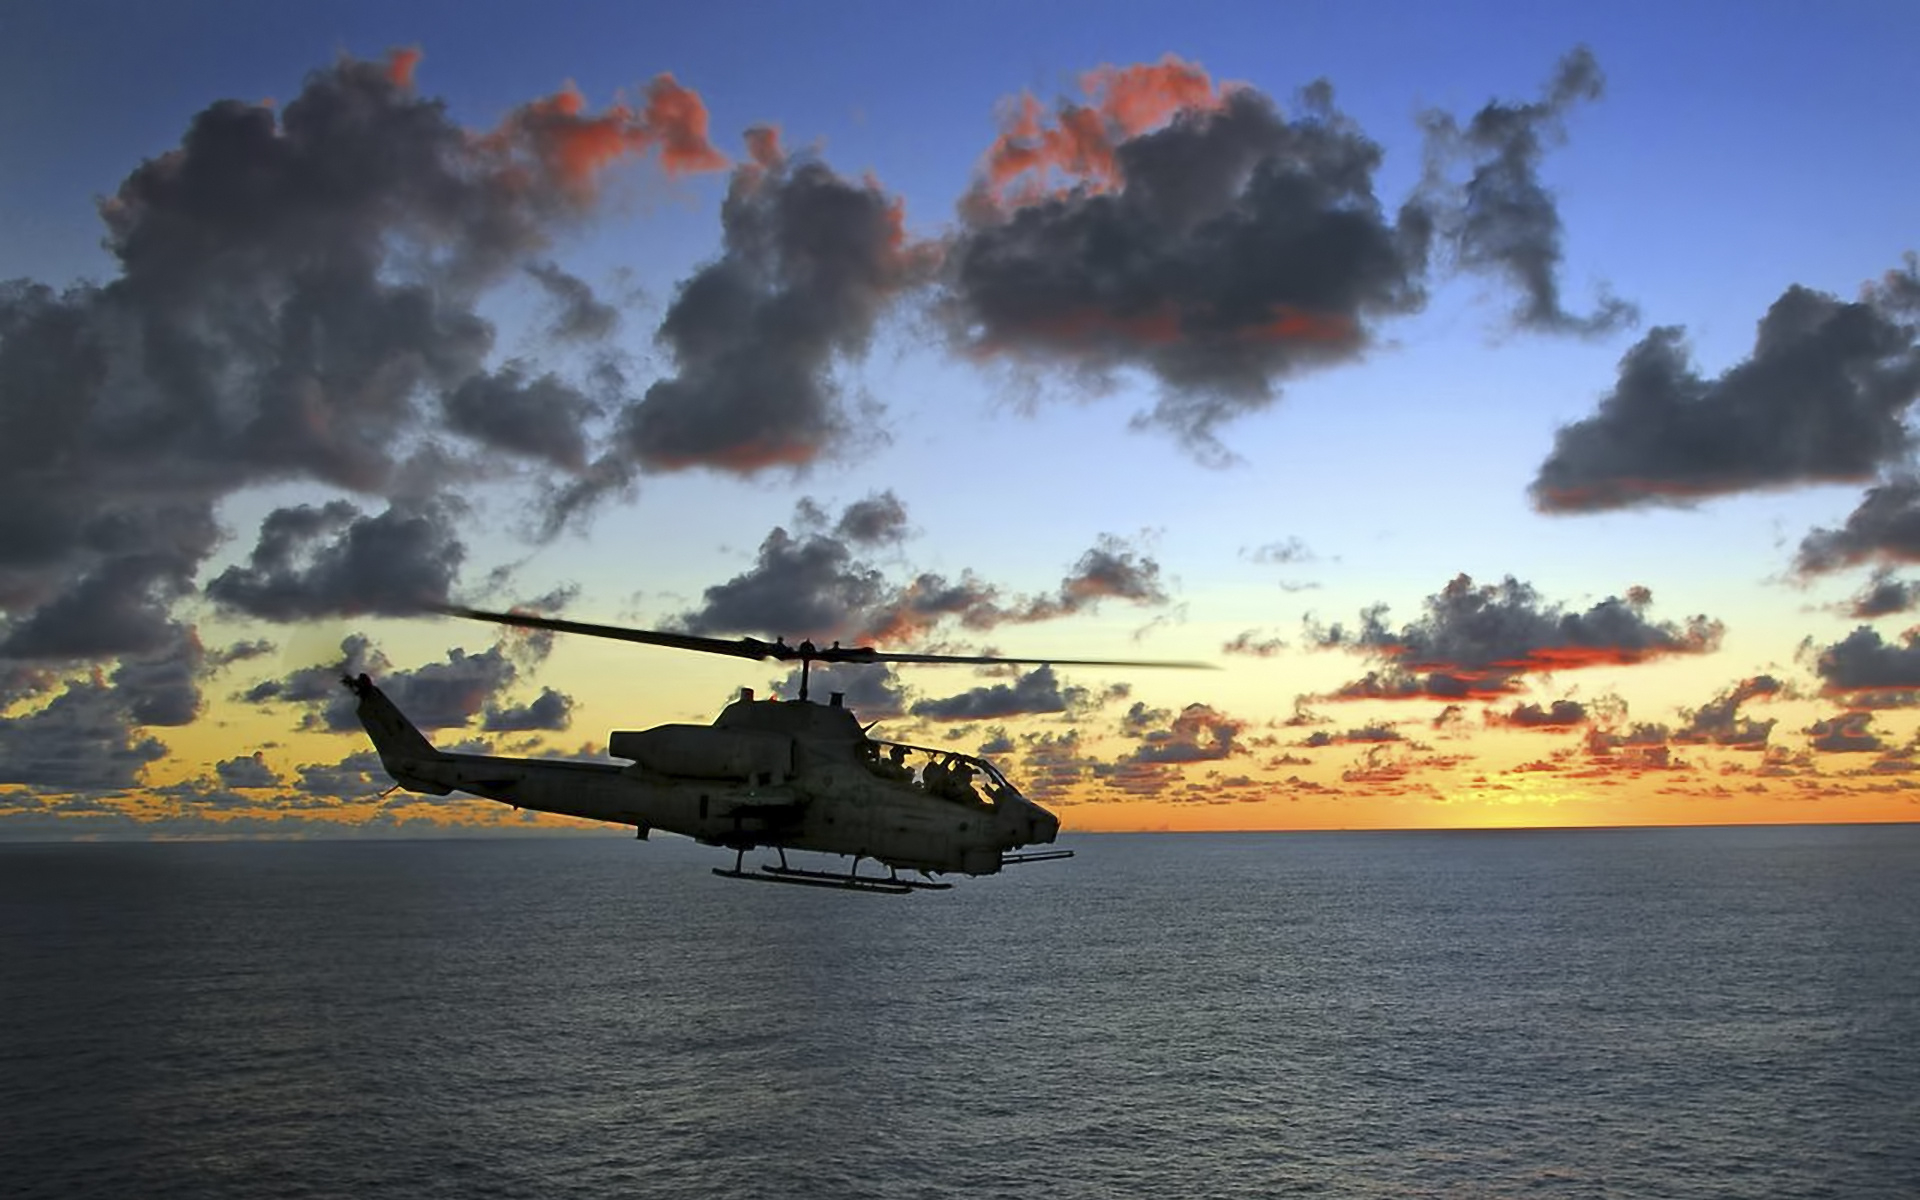 Вертолеты над водохранилищем. Самолеты и вертолеты. Вертолет над морем. Ка 52 на закате. Авиация вертолеты.